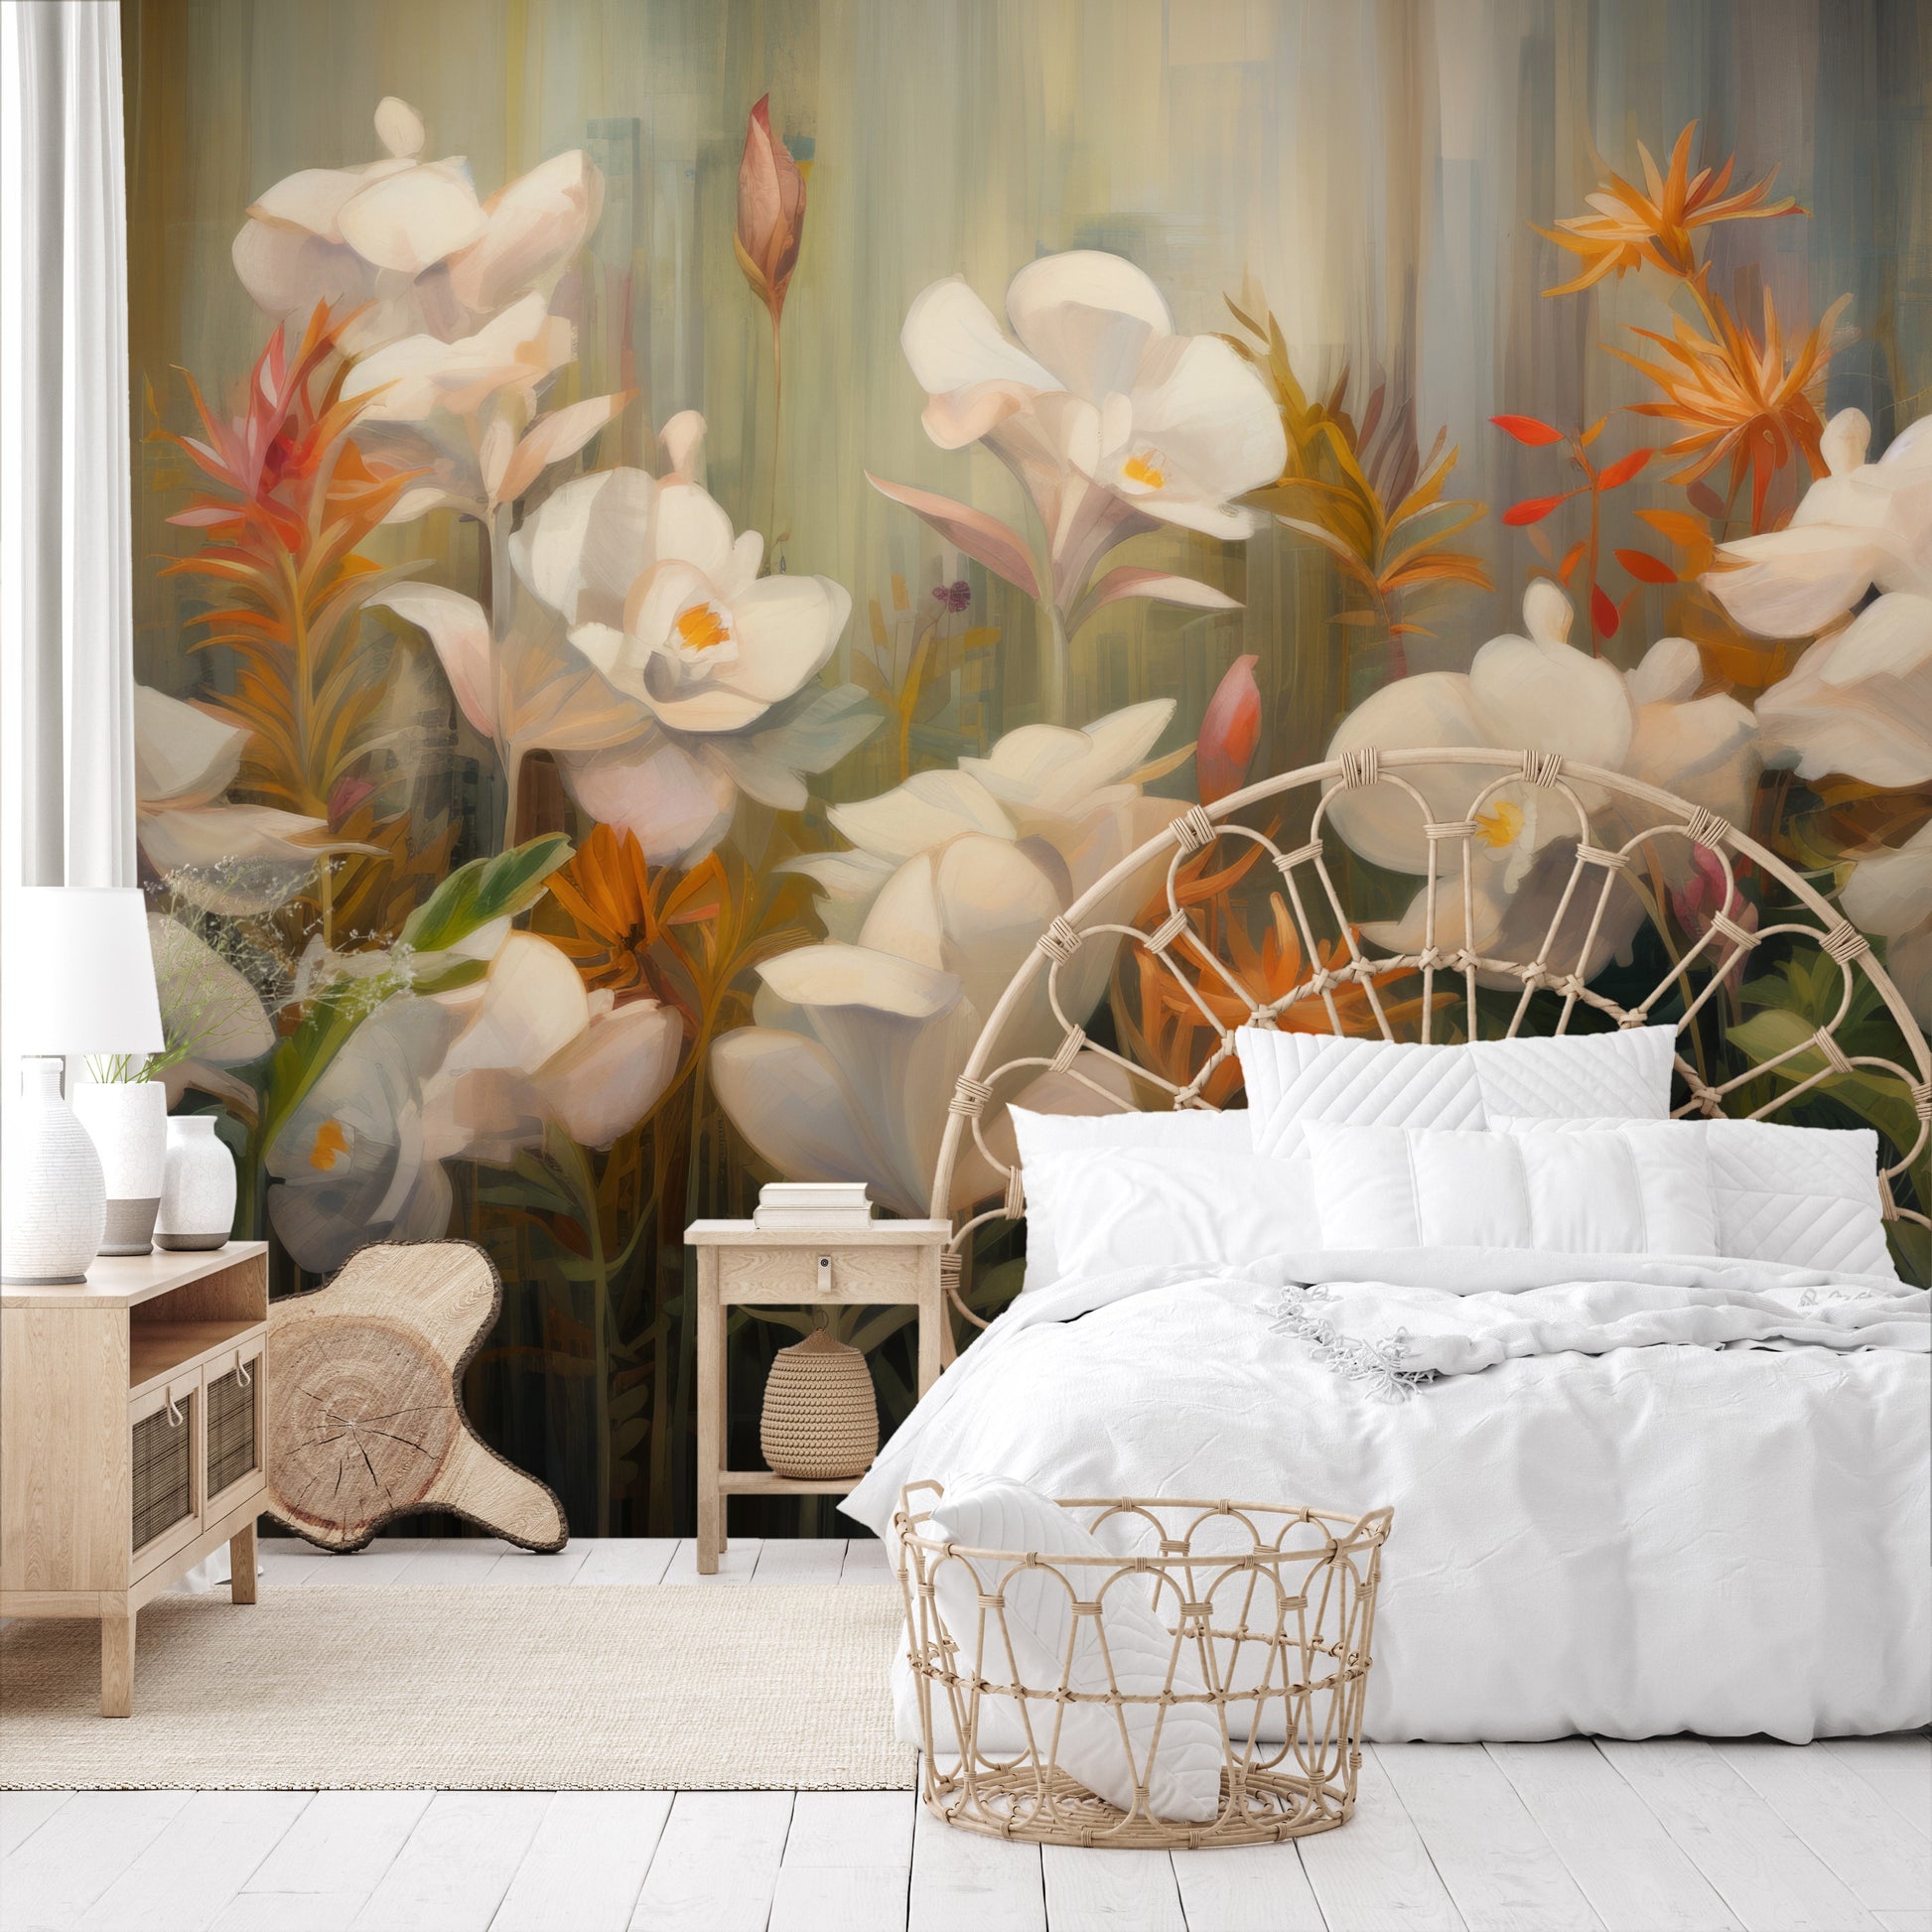 Wzór fototapety o nazwie Rainforest Orchid Delight pokazanej w kontekście pomieszczenia.